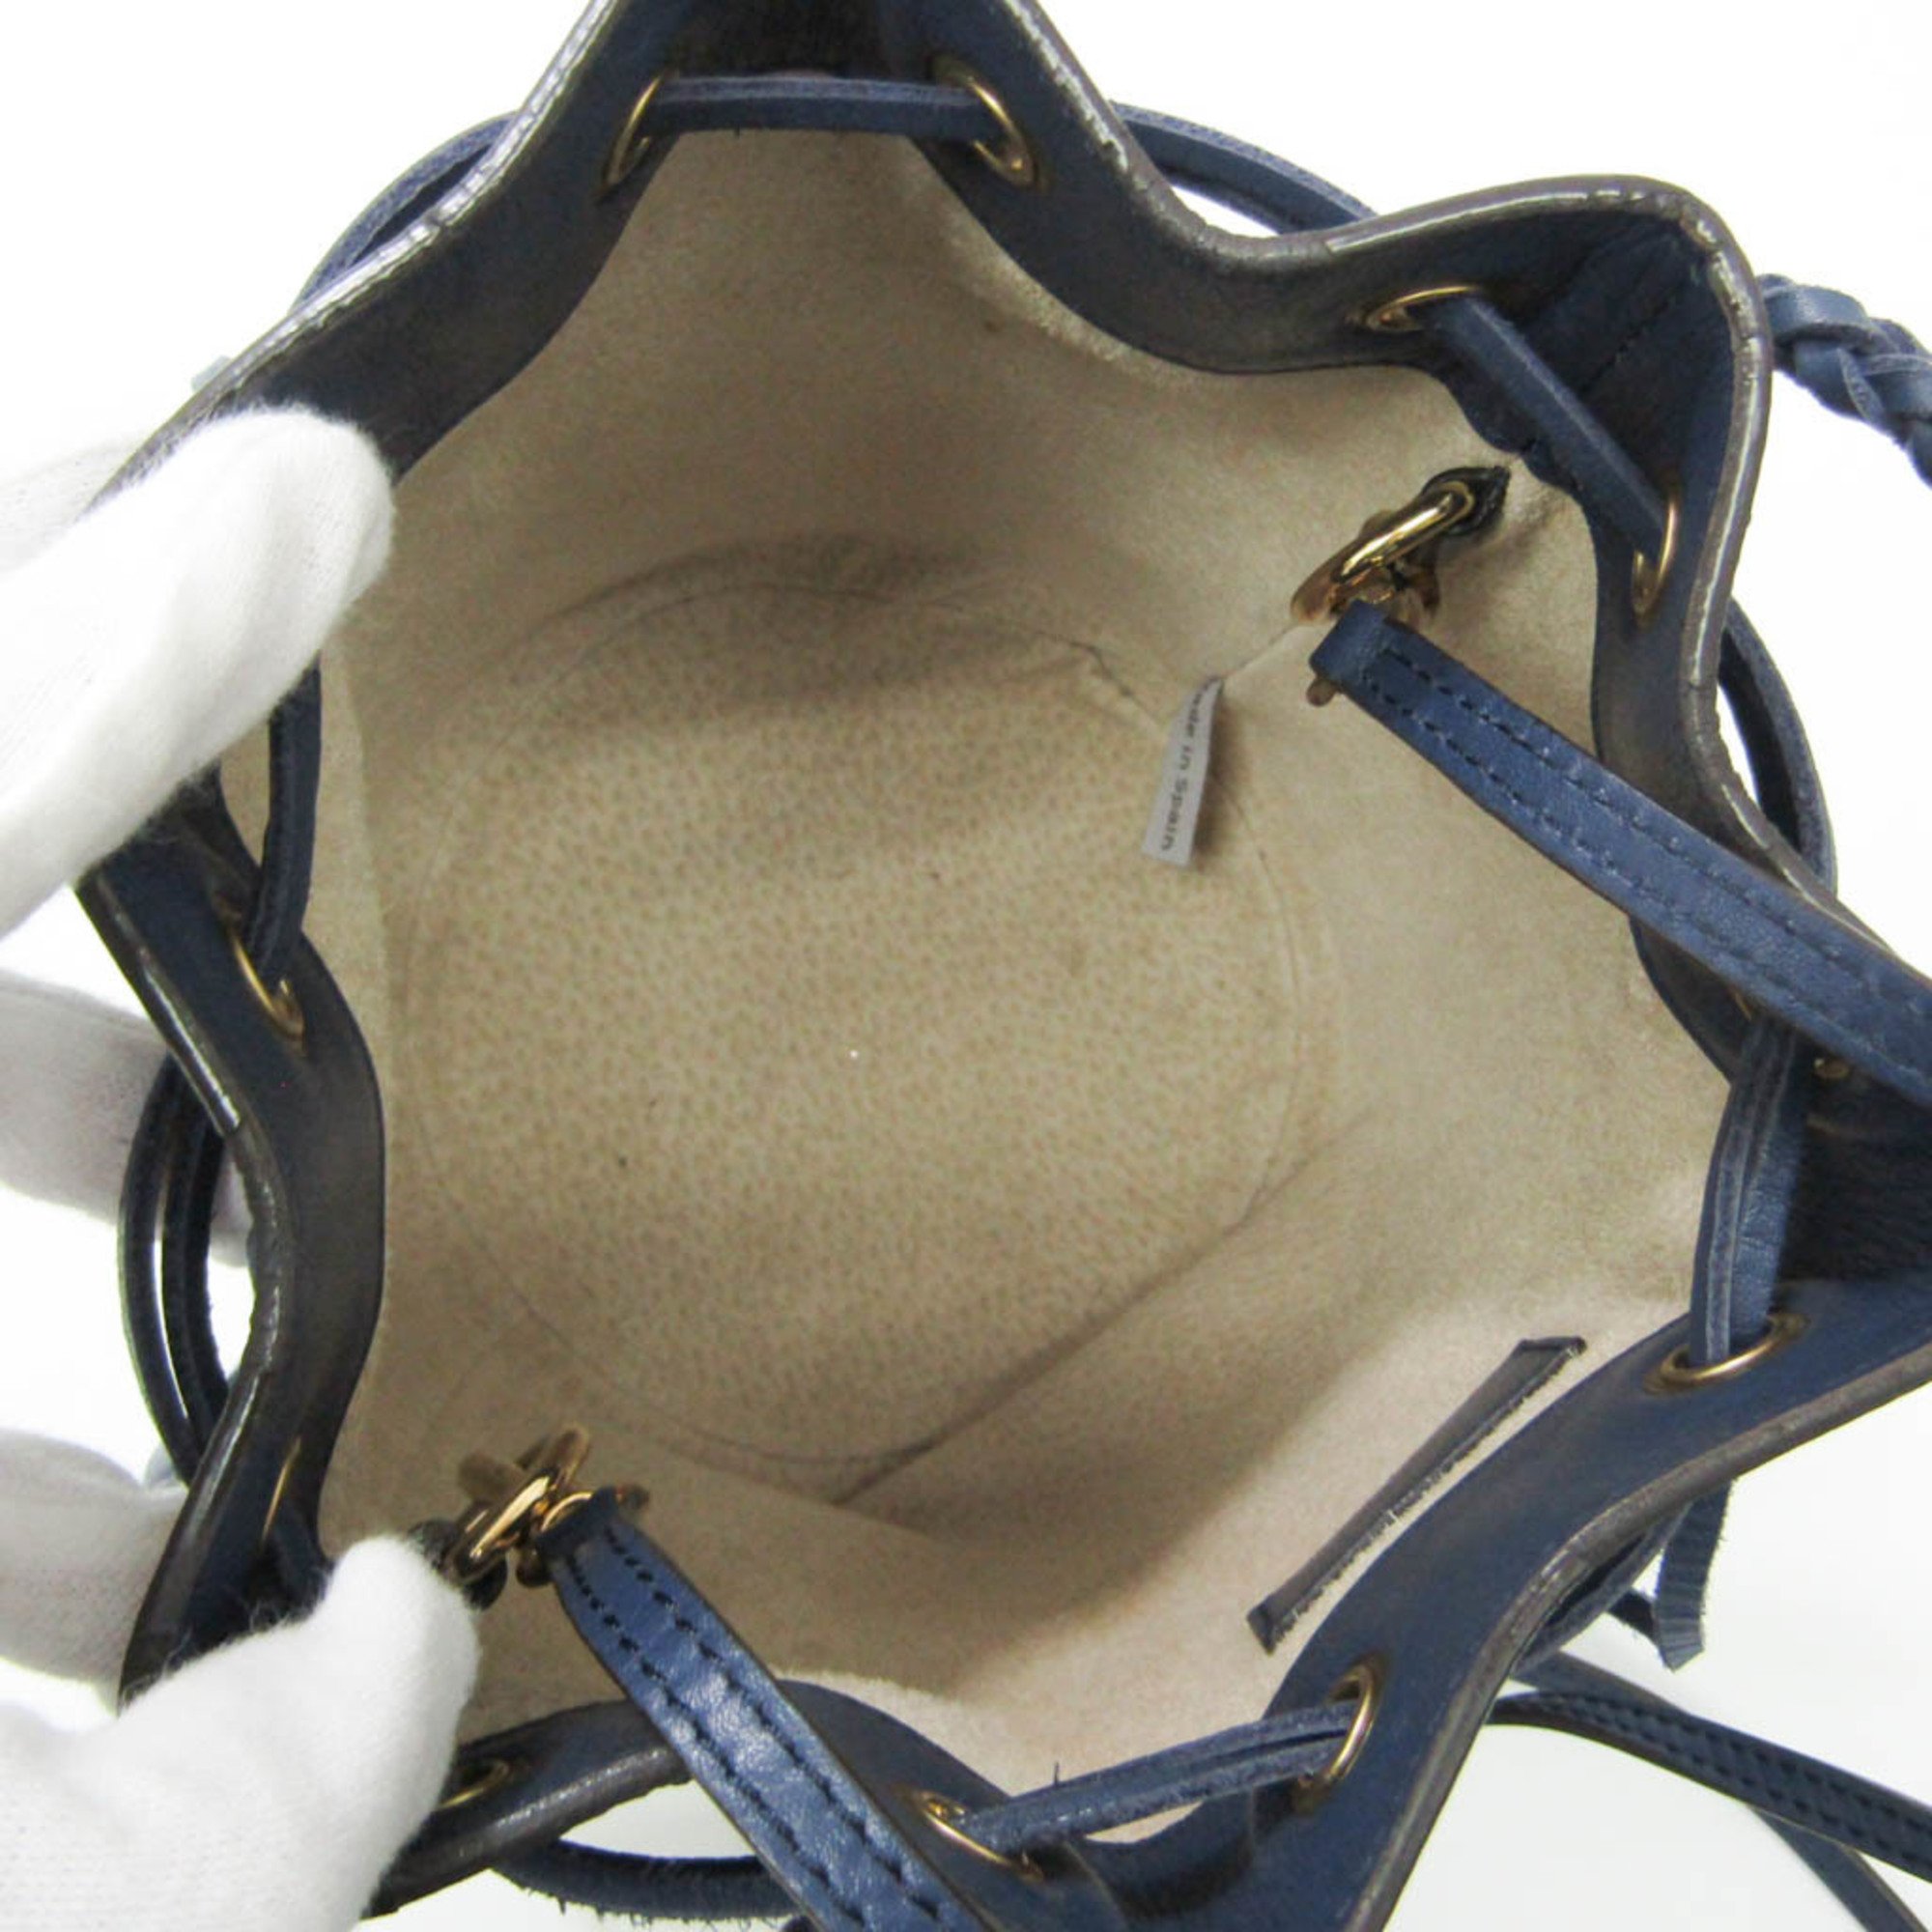 J&M Davidson Carnival Women's Leather Shoulder Bag,Tote Bag Navy